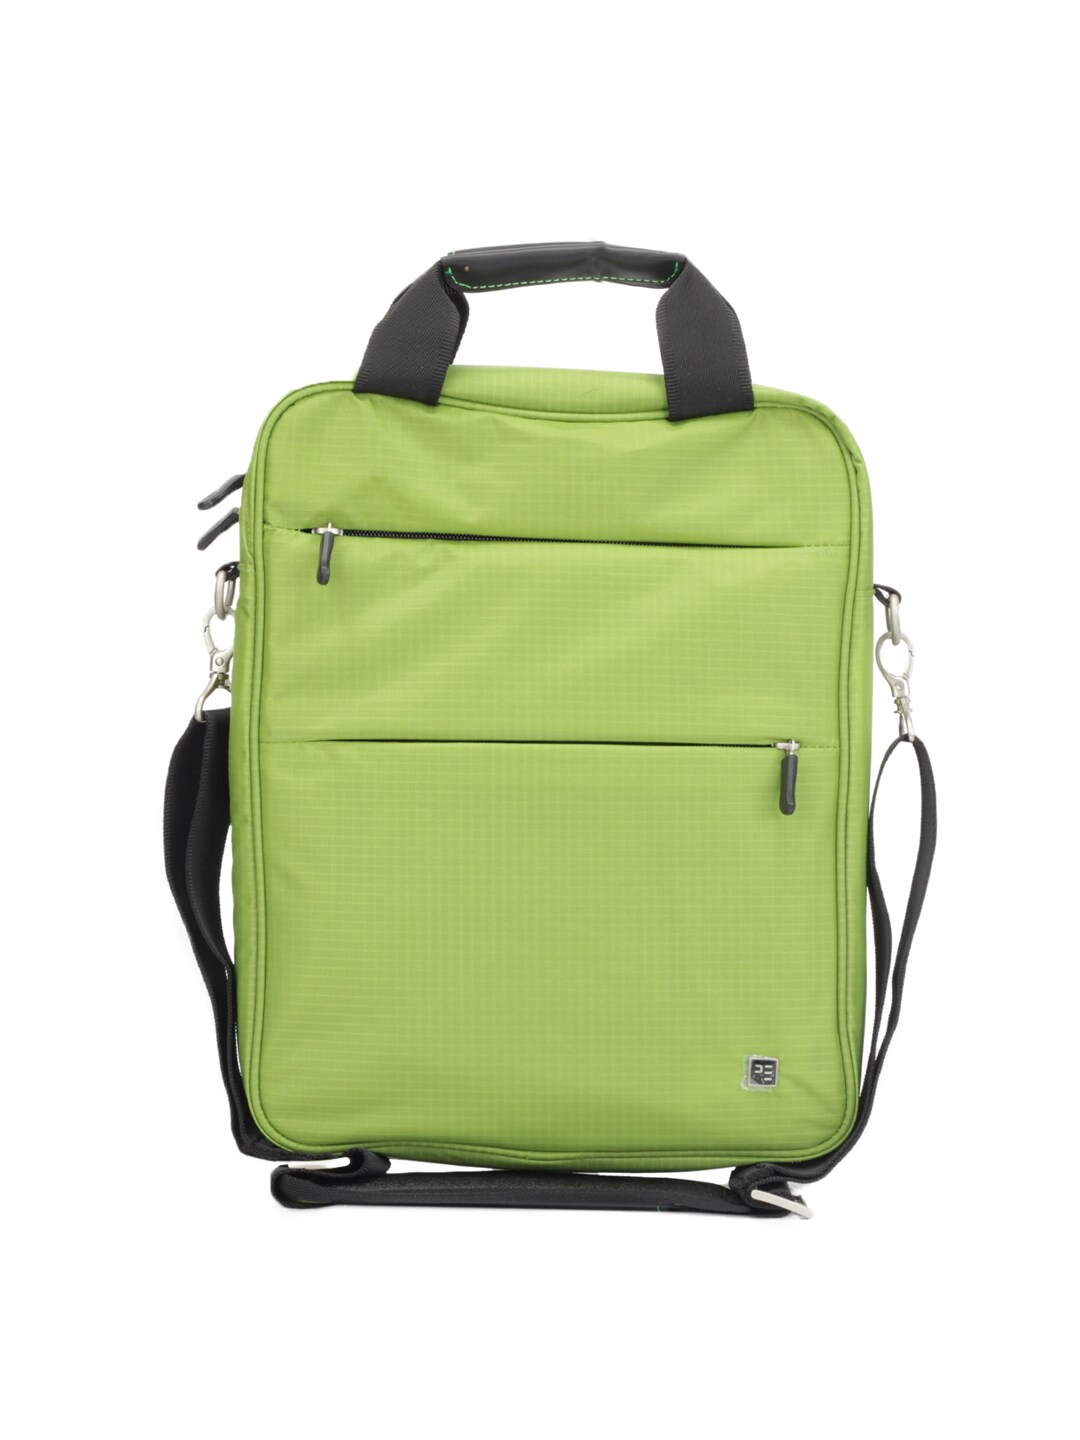 Peter England Unisex Green Messanger Bag